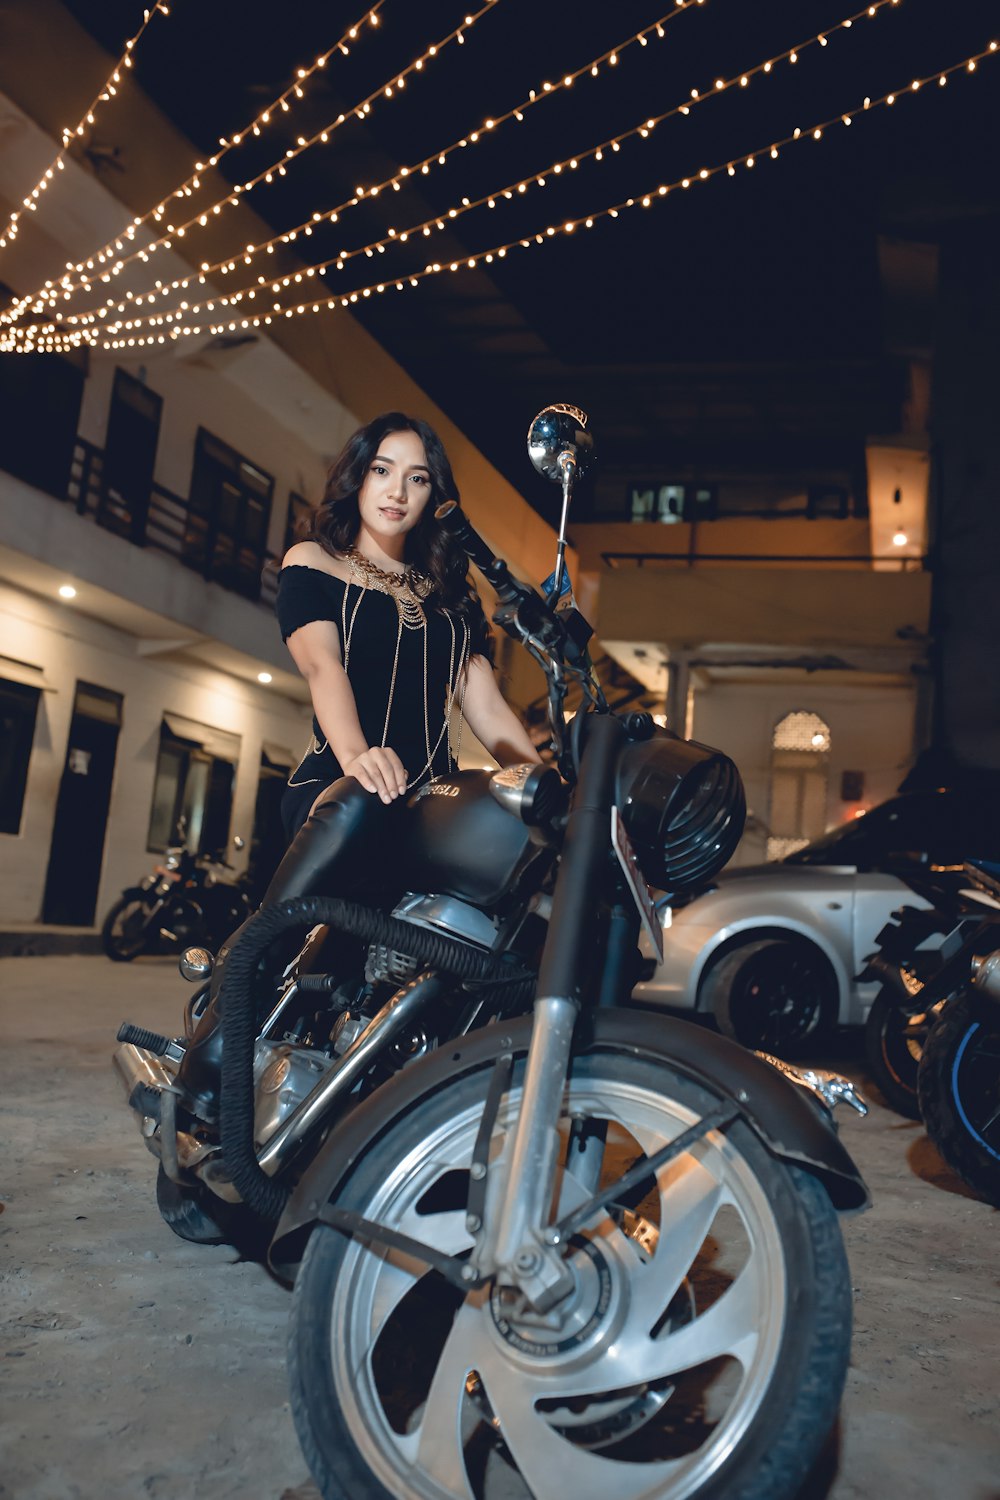 夜間に黒いバイクに乗っている黒いドレスの女性